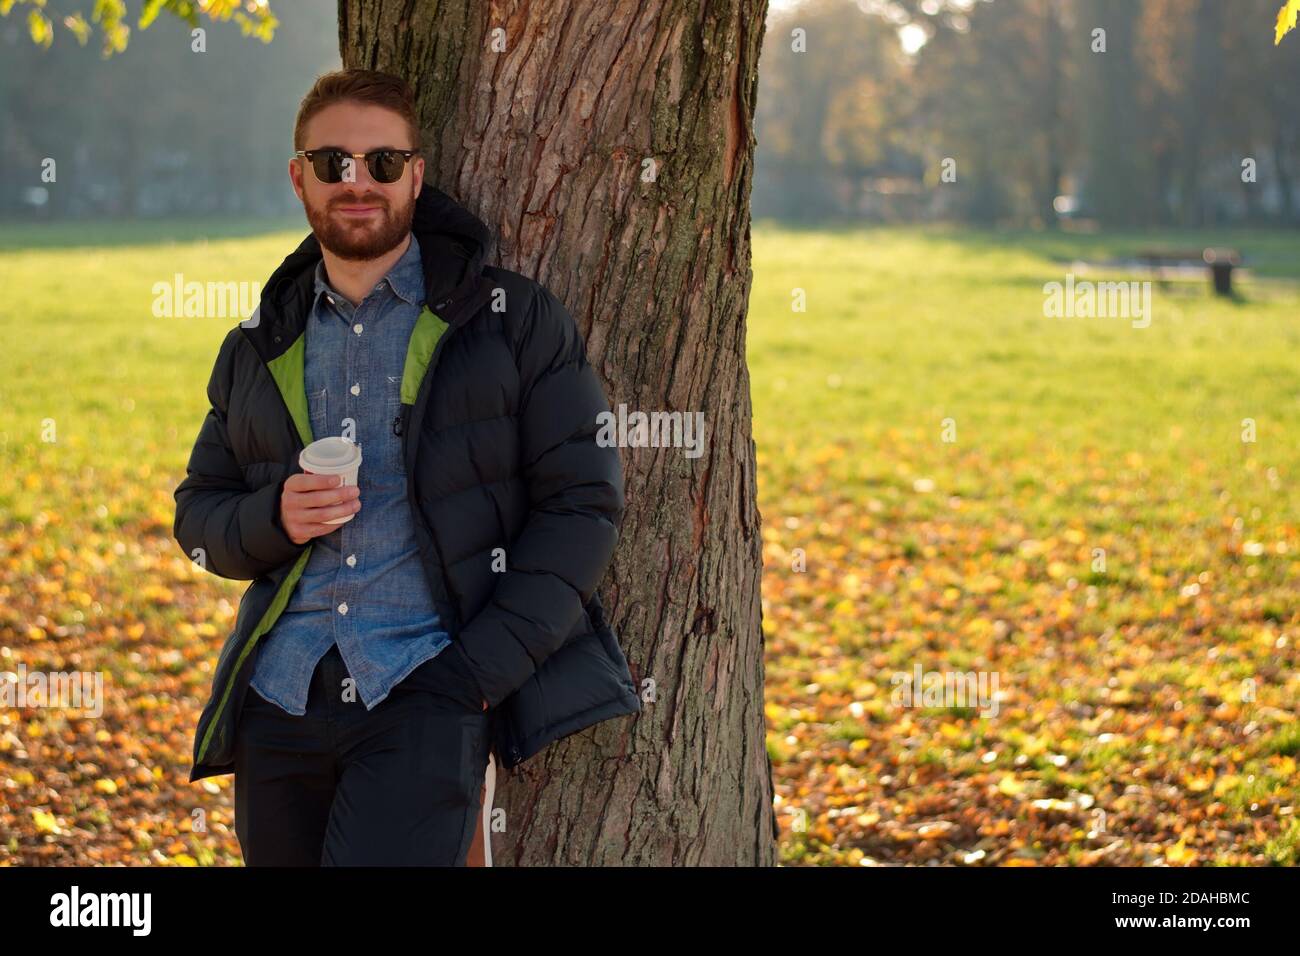 Portrait de beau jeune homme dans le parc - paysage d'automne Banque D'Images